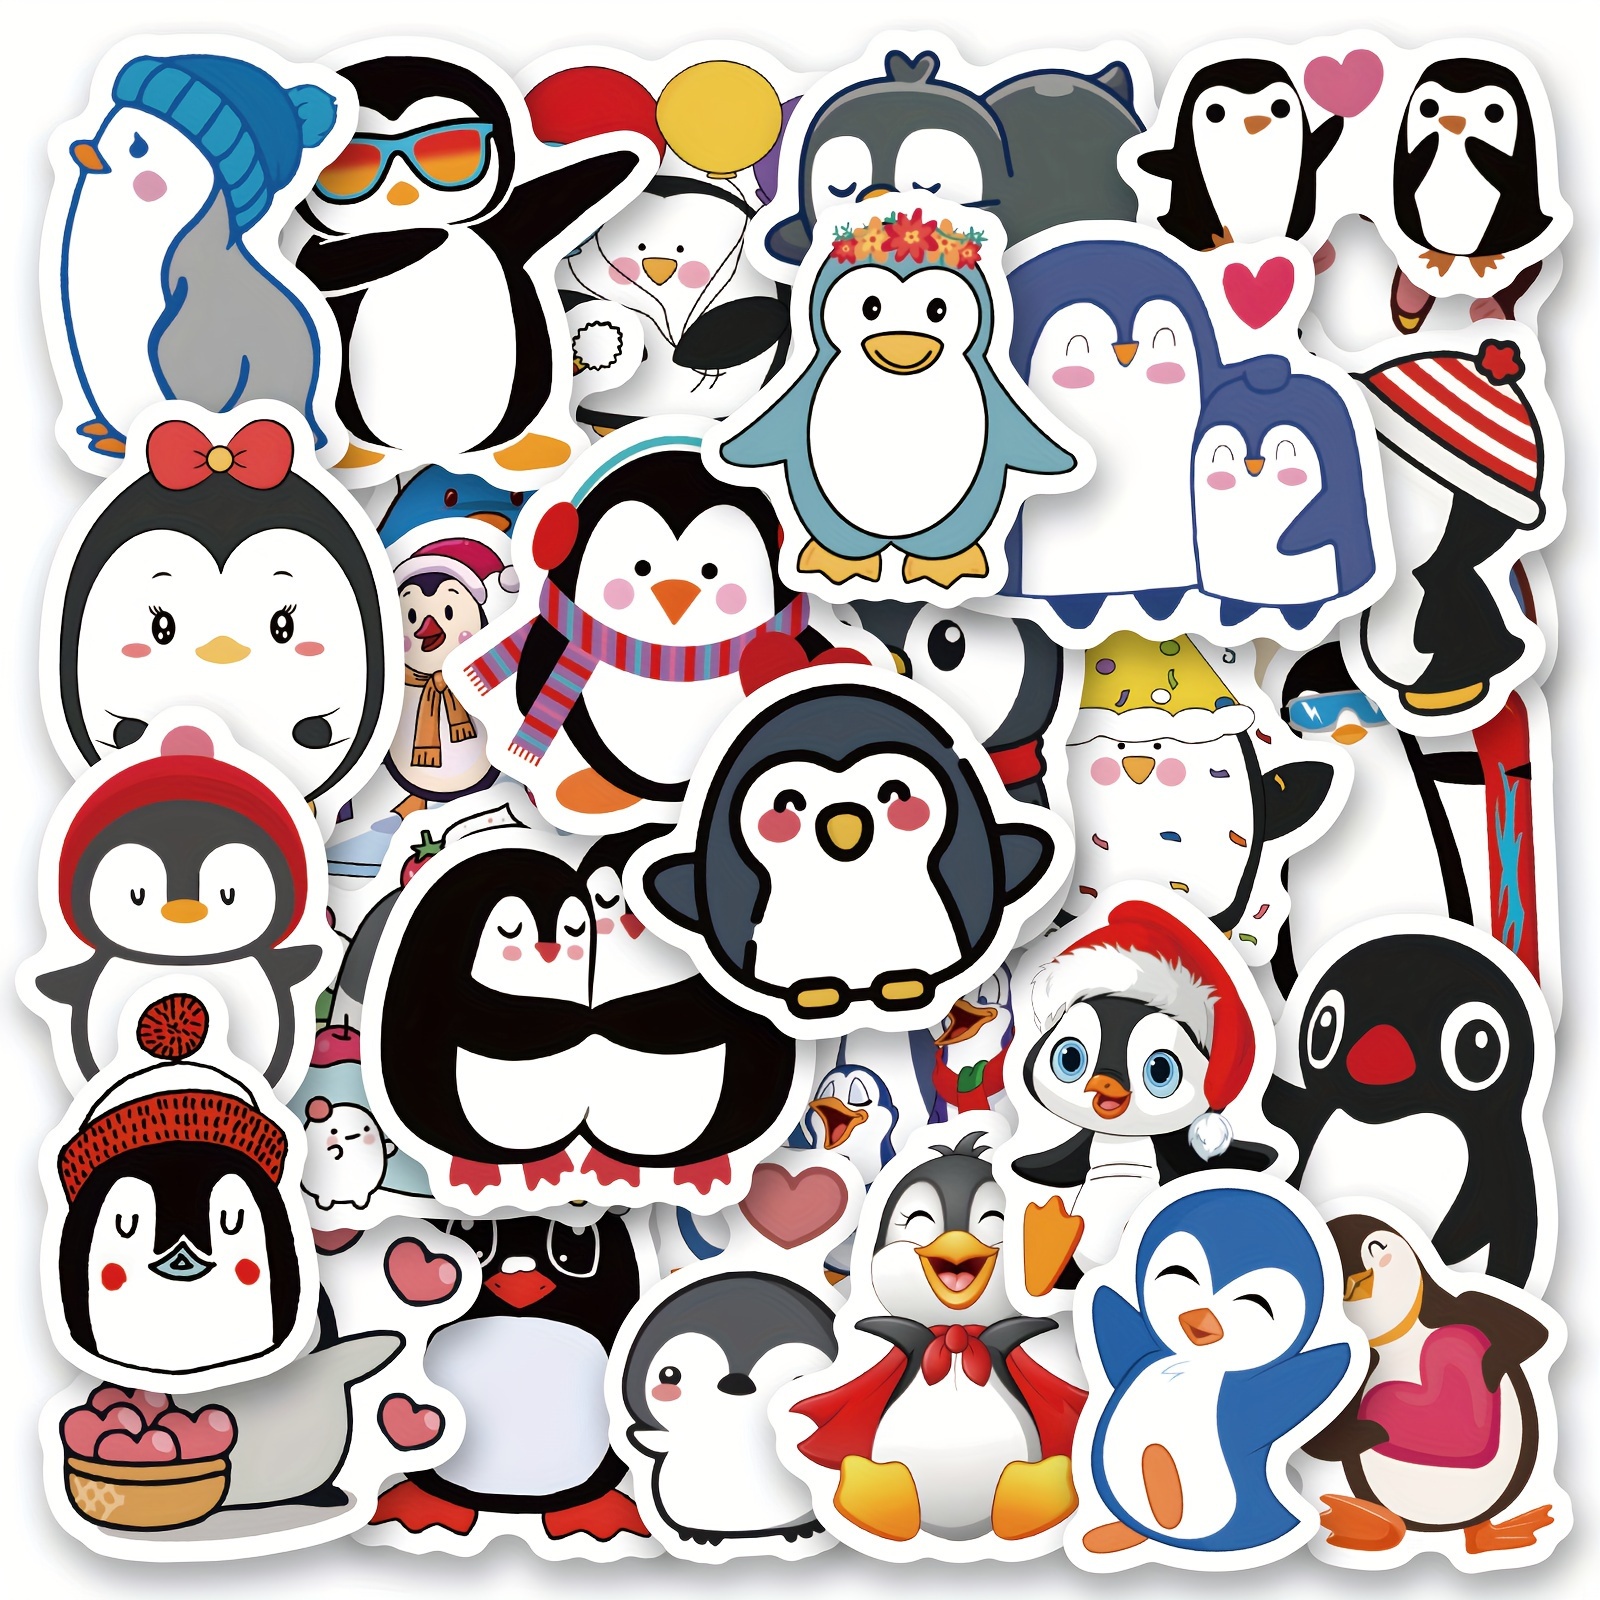 Penguin Stickers Roll, Cute Sticker Pack, Laptop,waterbottle